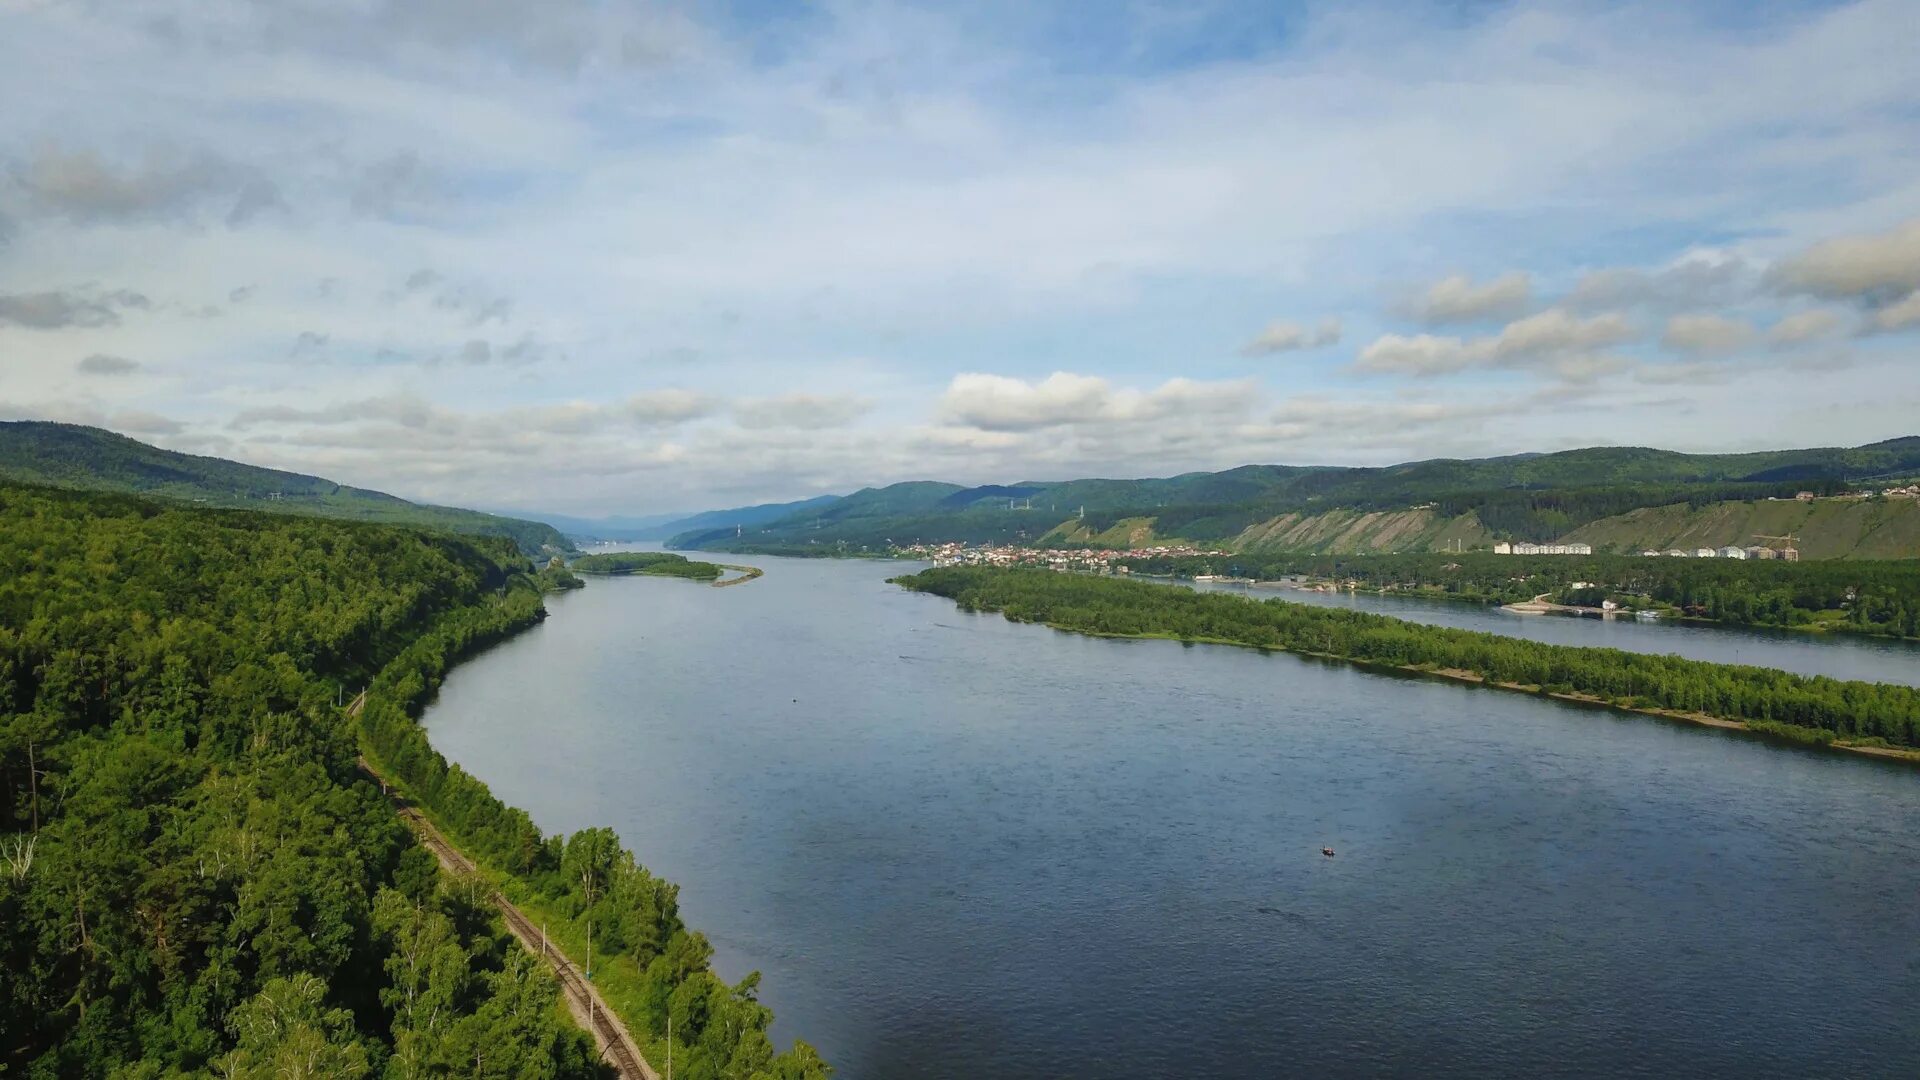 Самая длинная река в красноярском крае енисей